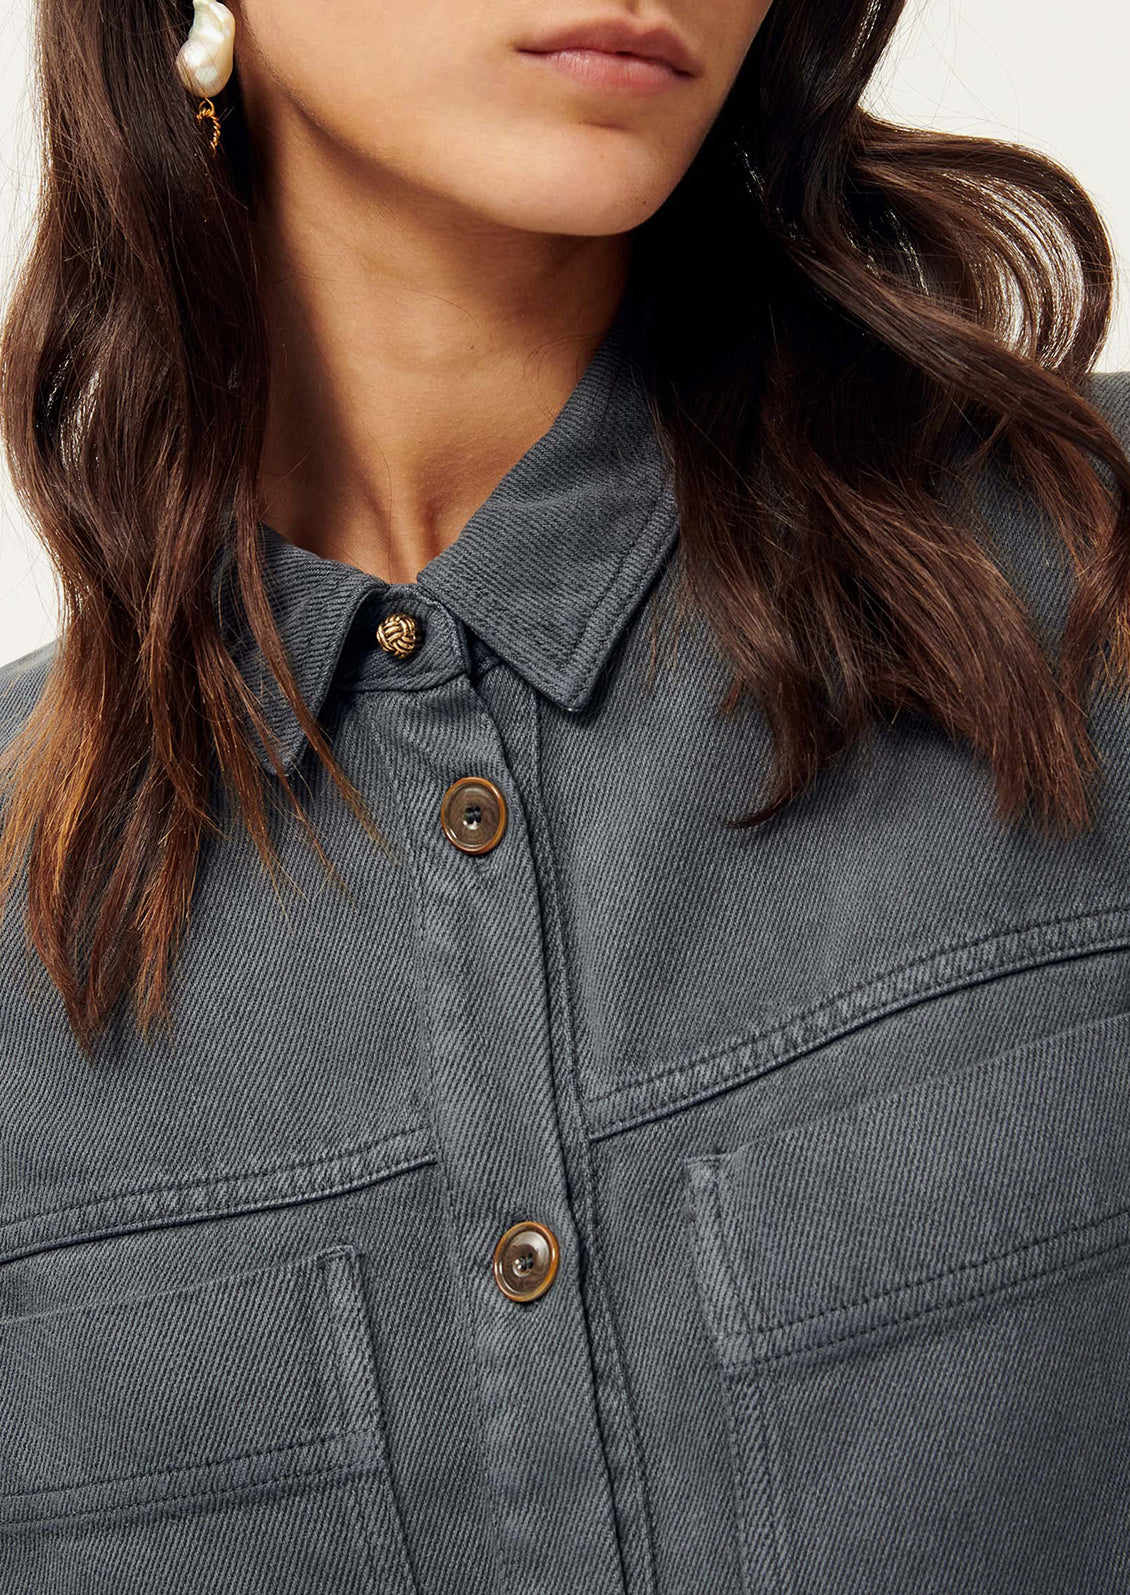 Close-up of woman wearing dark gray shirt jacket. 